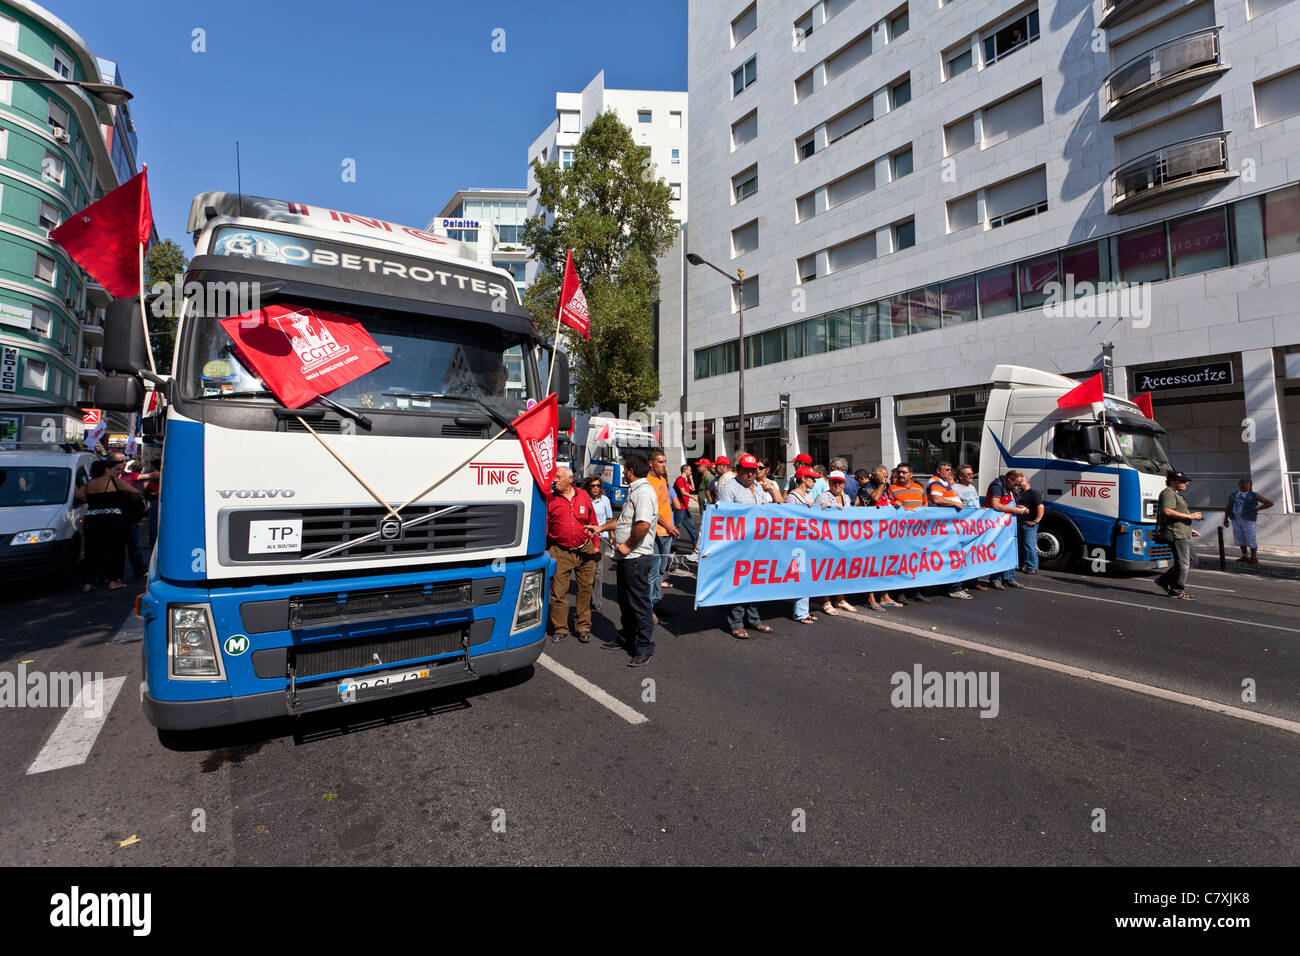 Les travailleurs de la compagnie de transport du CNC qui est insolvable. Manifestation contre le FMI / plan de rigueur. Lisbonne, le 1er octobre 2011 Banque D'Images